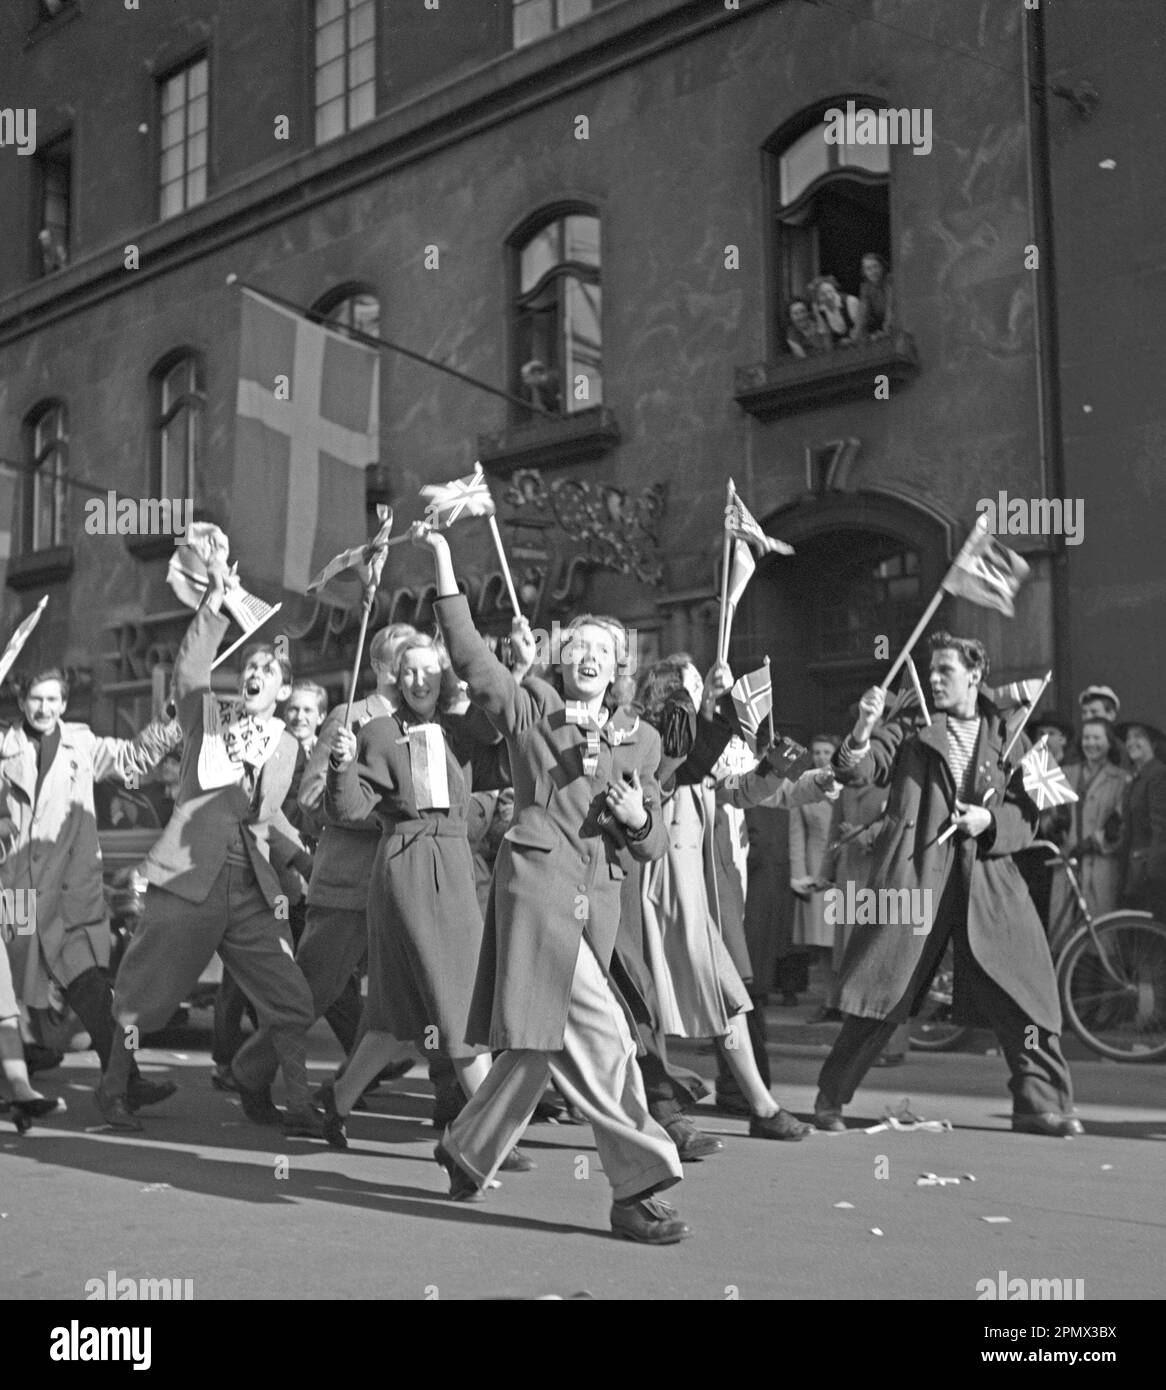 Célébration de la paix 1945. Le peuple de Stockholm célèbre la fin de la Seconde Guerre mondiale Les hommes et les femmes sont photographiés marchant sur Kungsgatan le jour où la paix a été proclamée en Europe Suède 7 mai 1945. Photo Kristoffersson N125-2 Banque D'Images